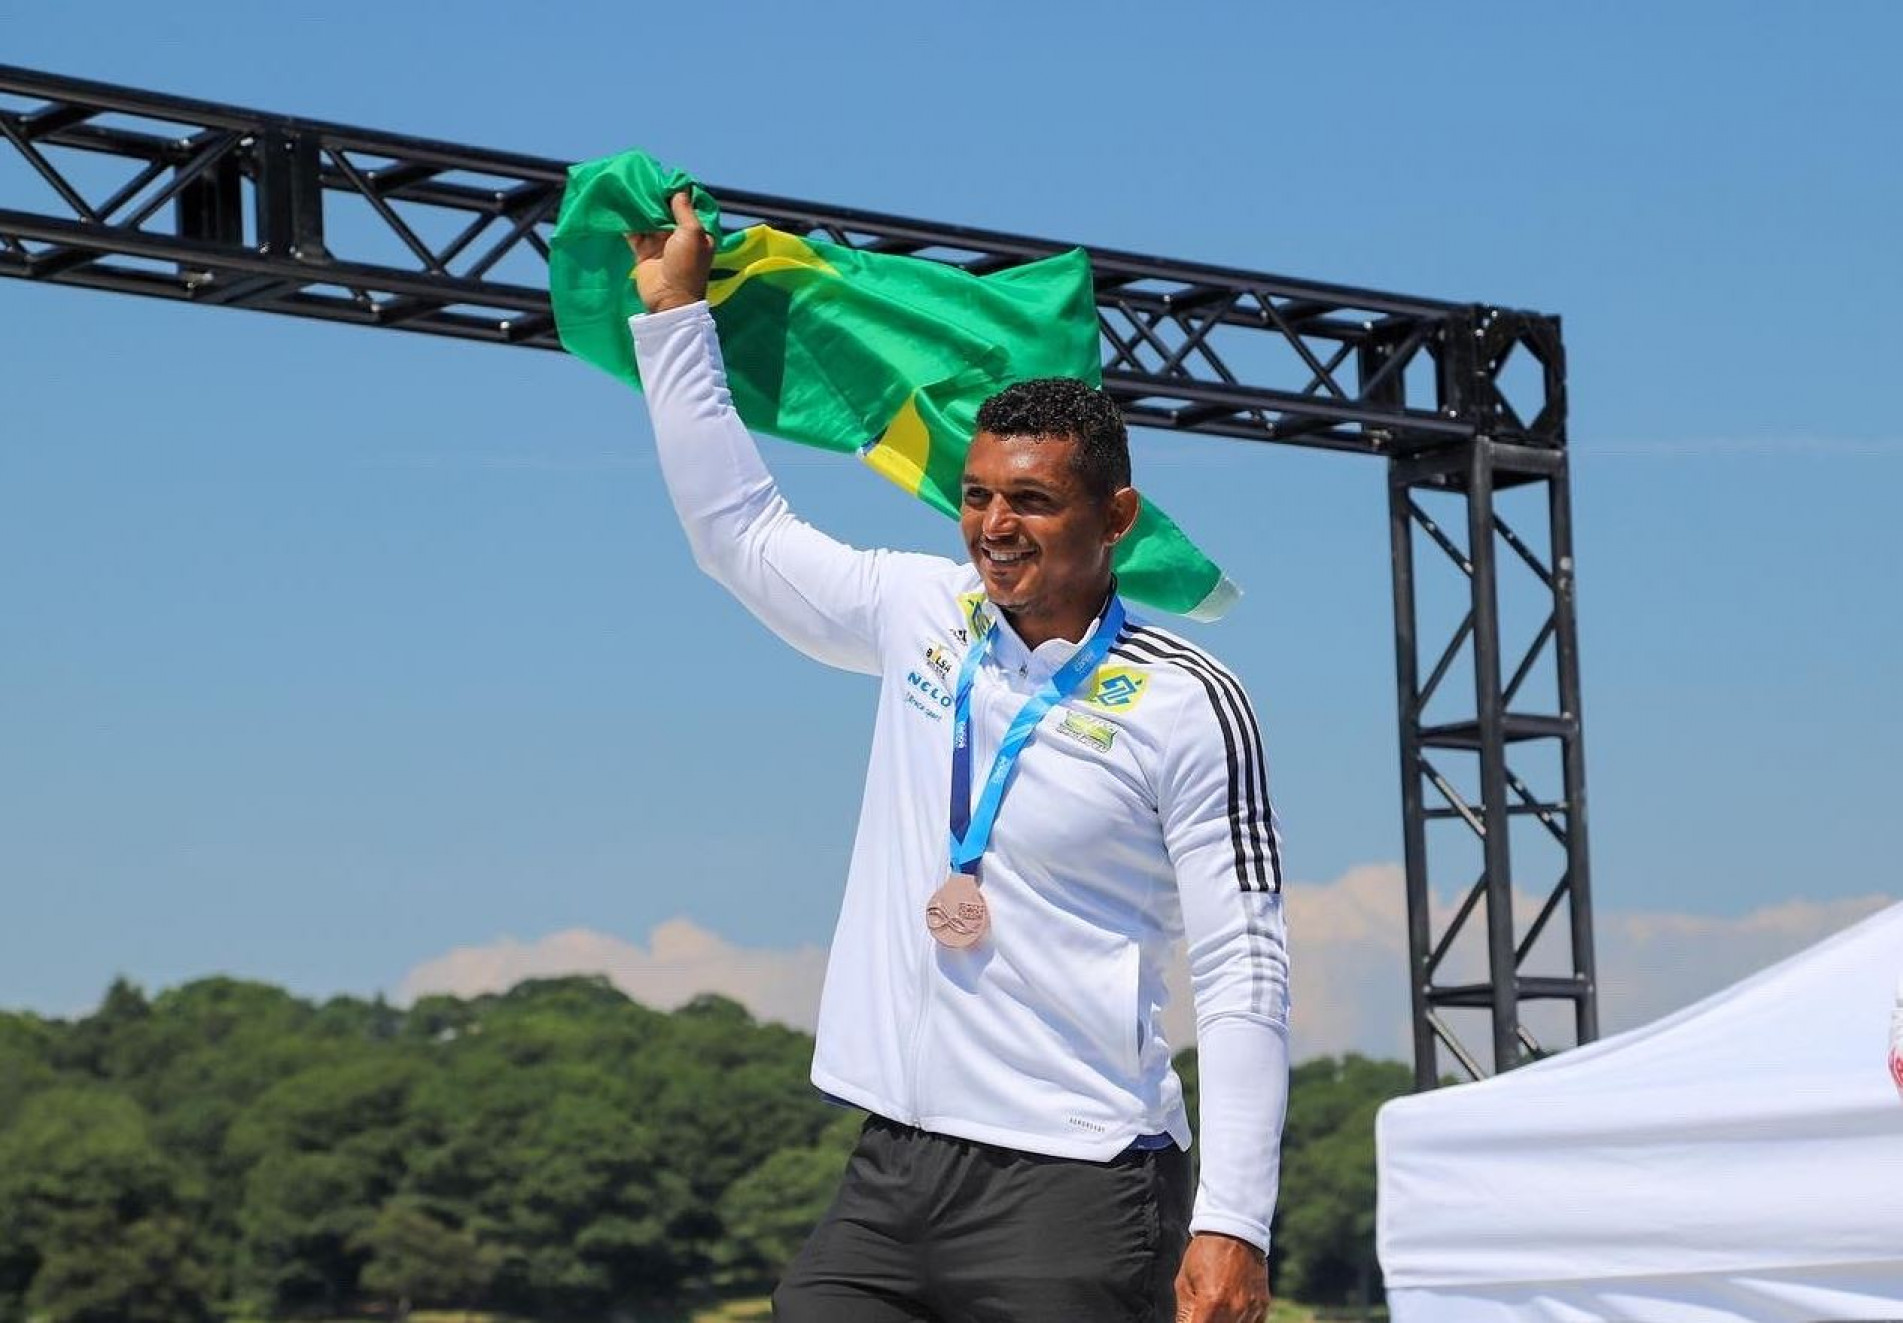 Com o ouro na velocidade, o brasileiro soma a 13ª medalha